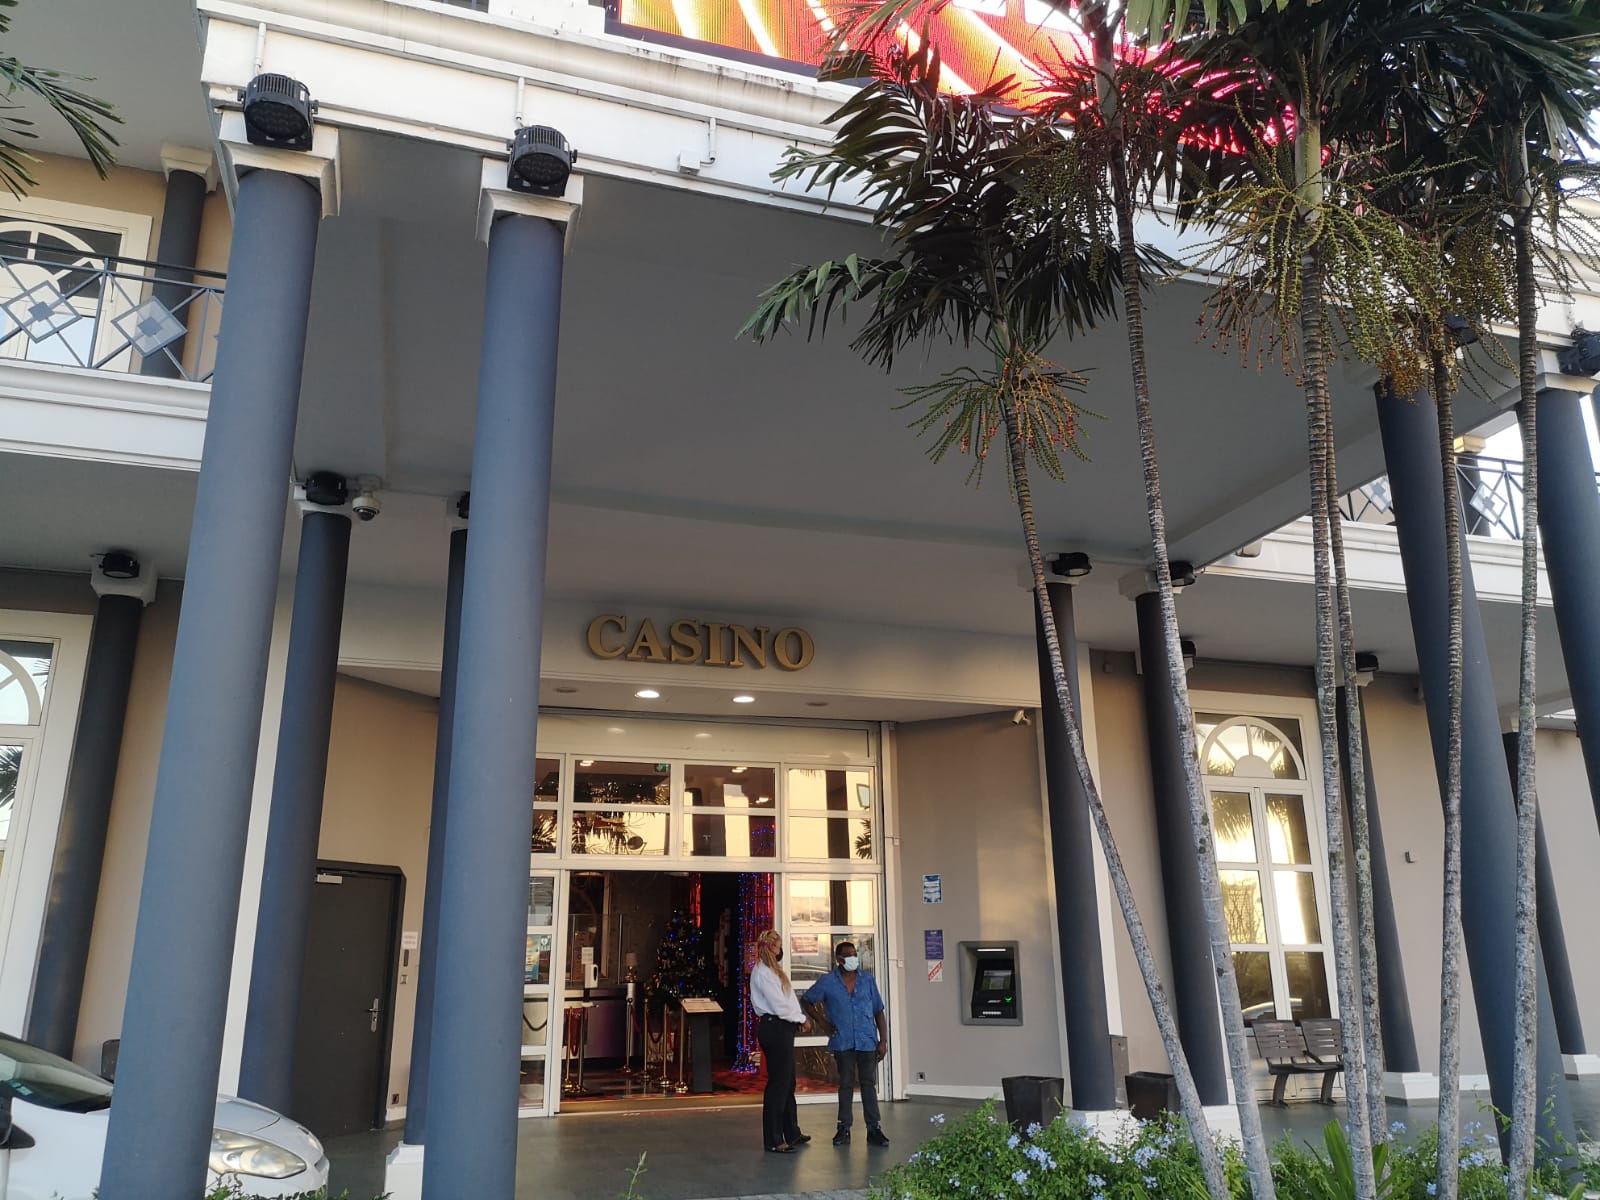     Le casino Batelière rouvre ses portes

